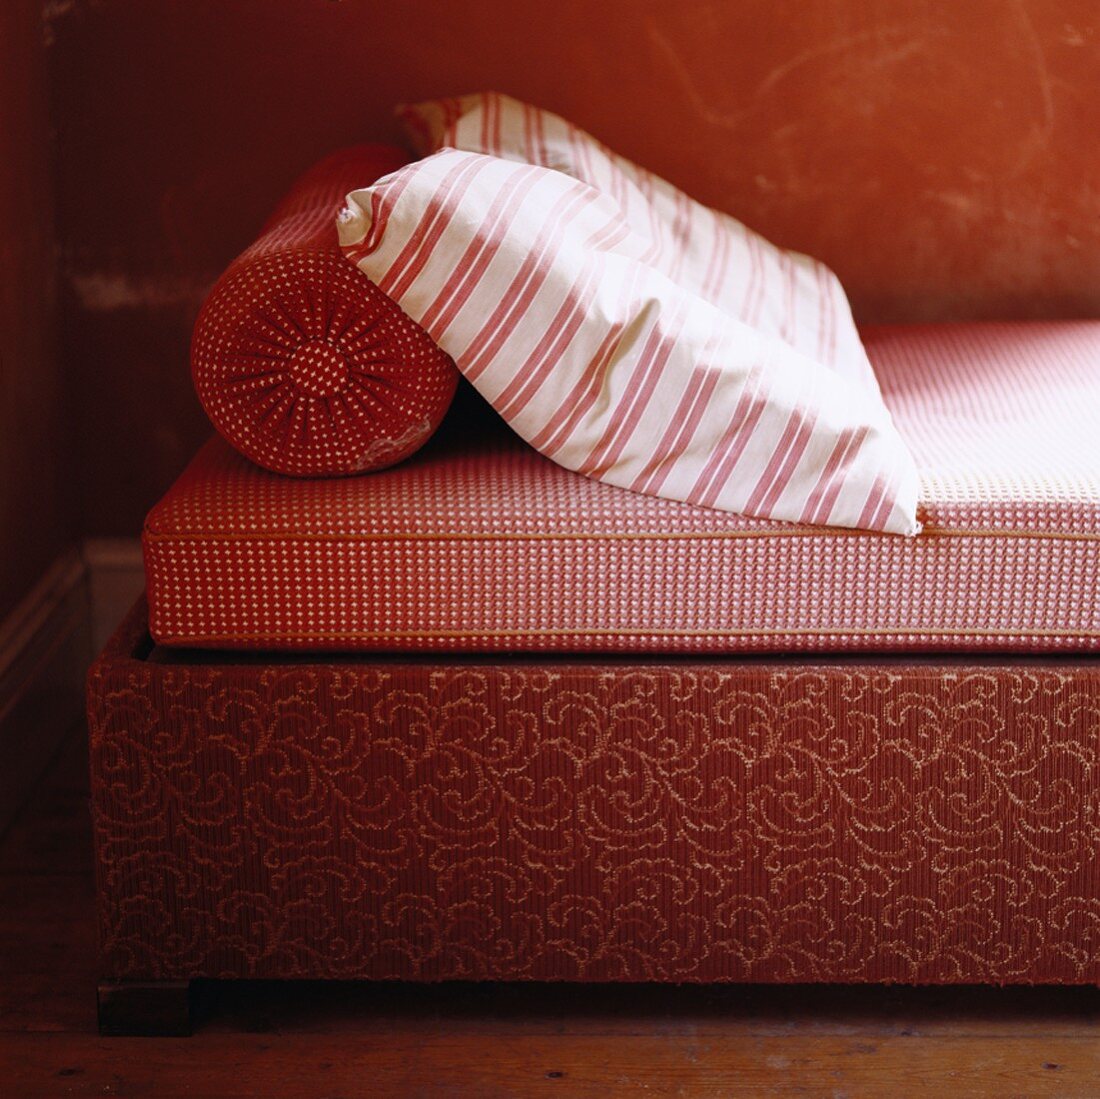 Oranges Bett mit Streifen- und Karomuster; den Bettkasten ziert ein florales Motiv